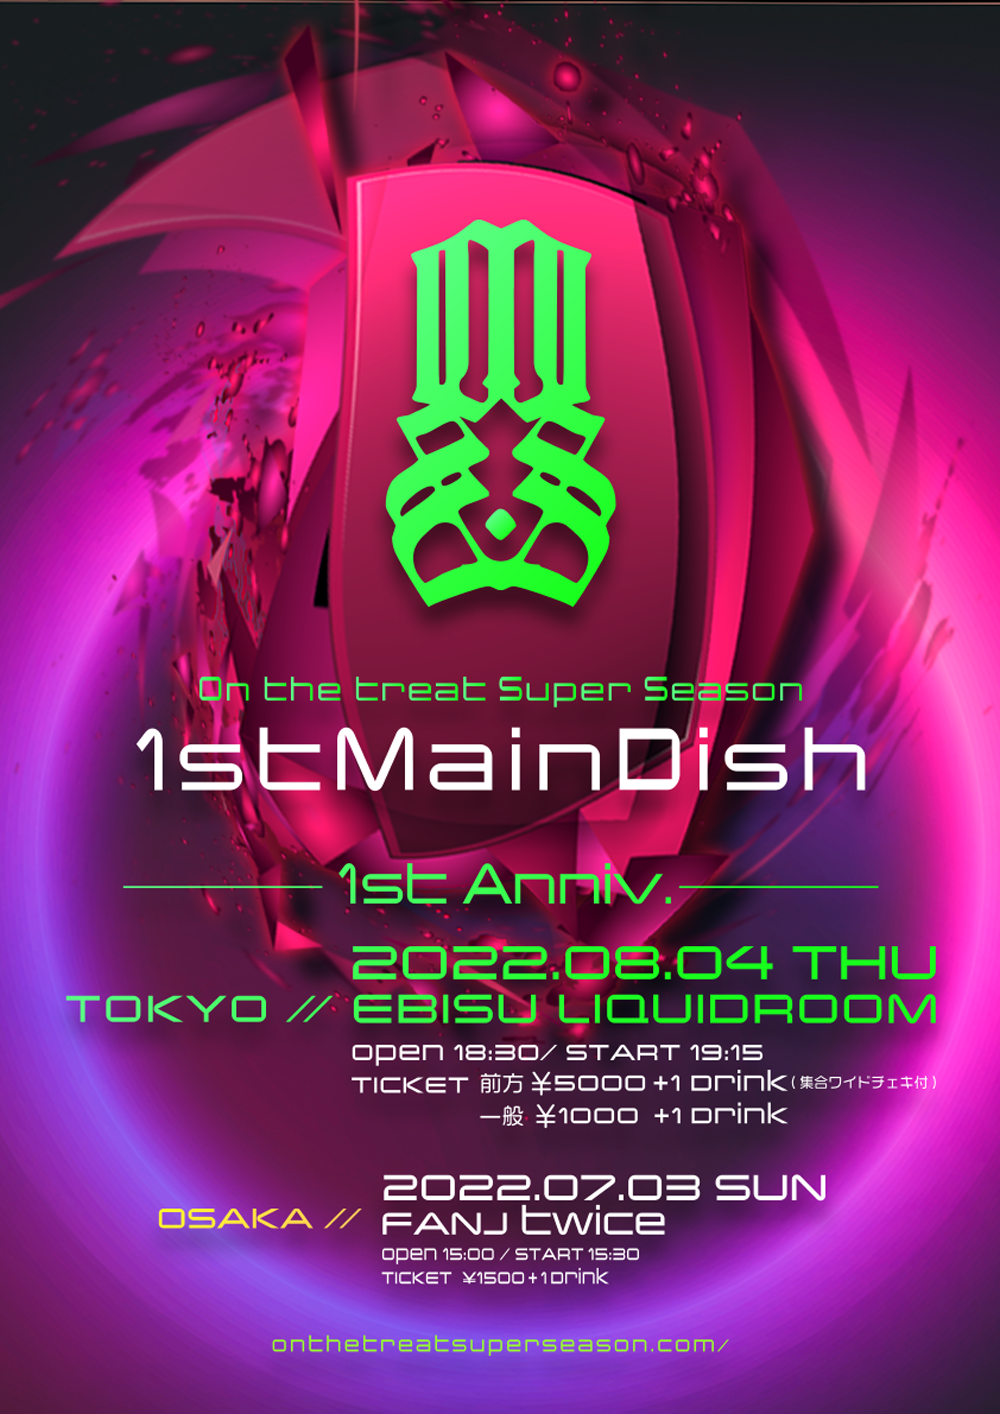 OSS-1stMainDish OSAKA